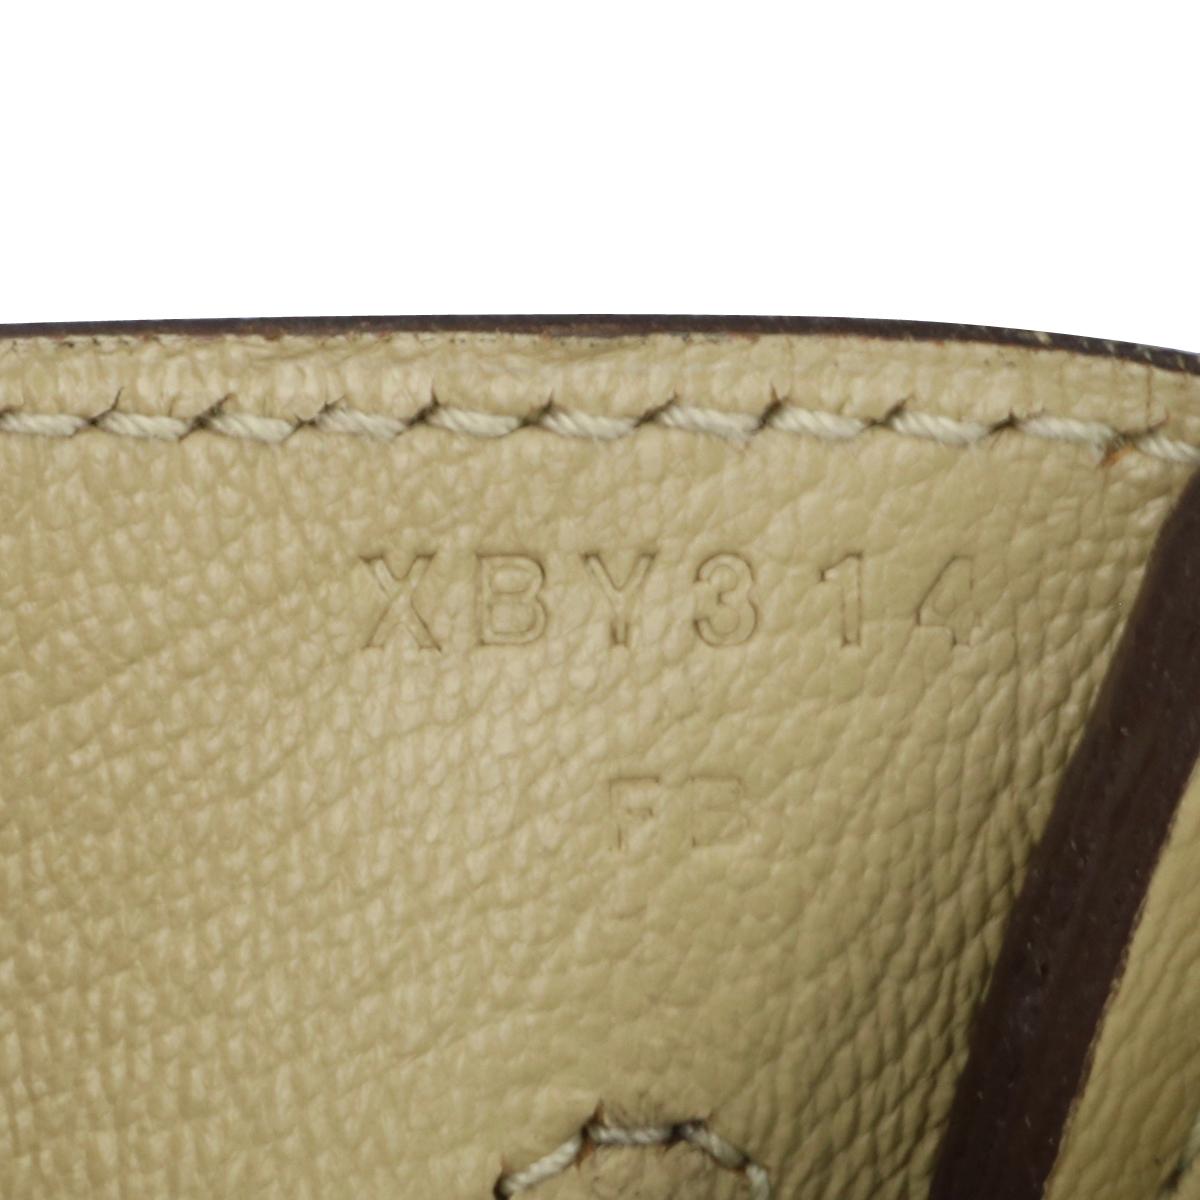 Hermès Birkin Bag 35cm Tasche Trench Togo Leder mit Palladium Hardware Stempel X 13